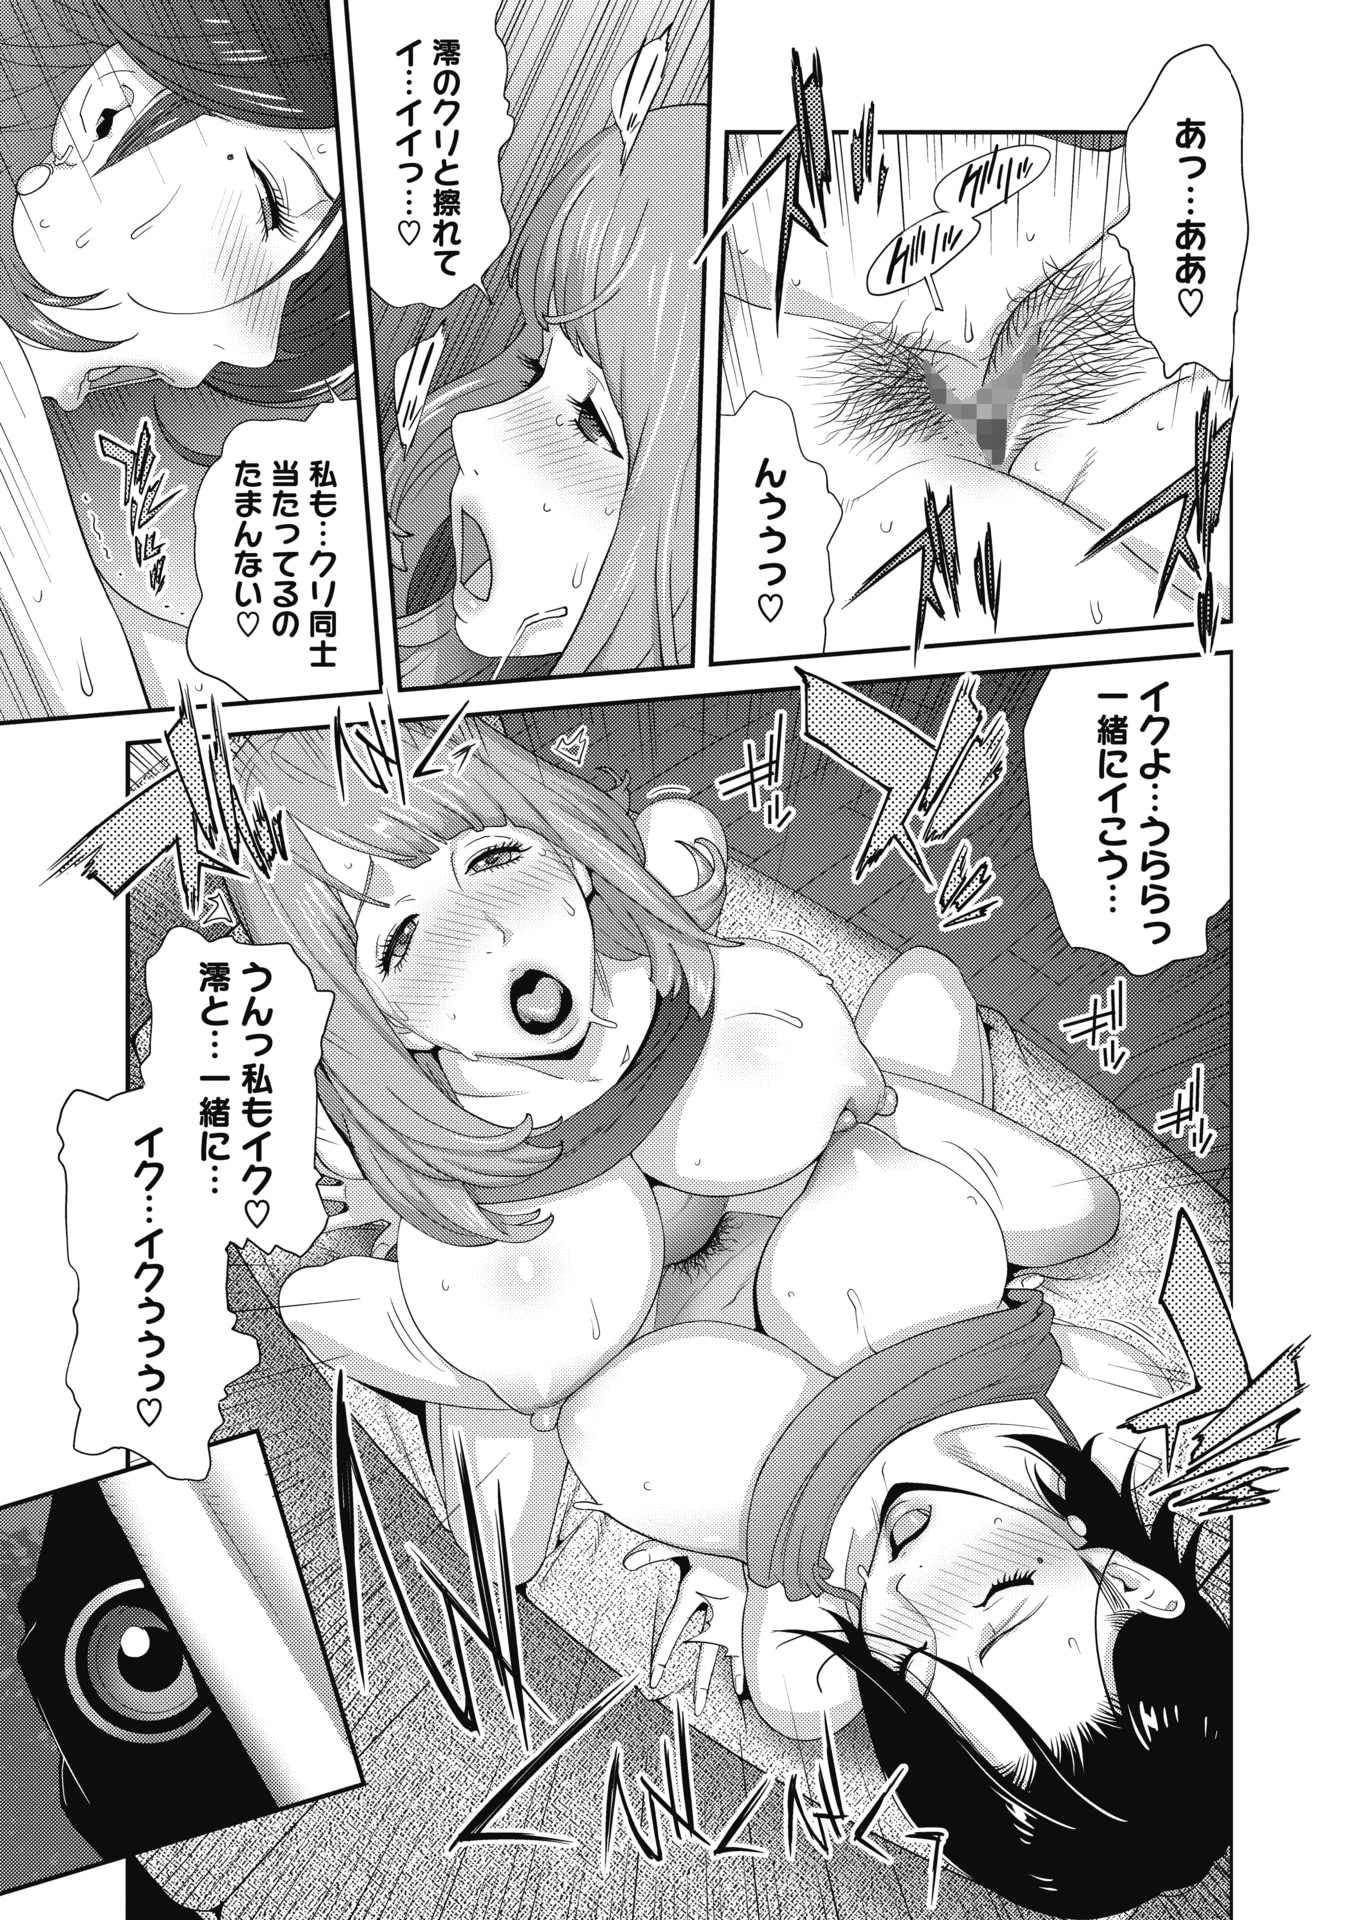 【エロ漫画】メガネの巨乳女子が女性に乳首を弄られてクンニされ、股間を擦り合わせてレズプレイするｗｗｗ